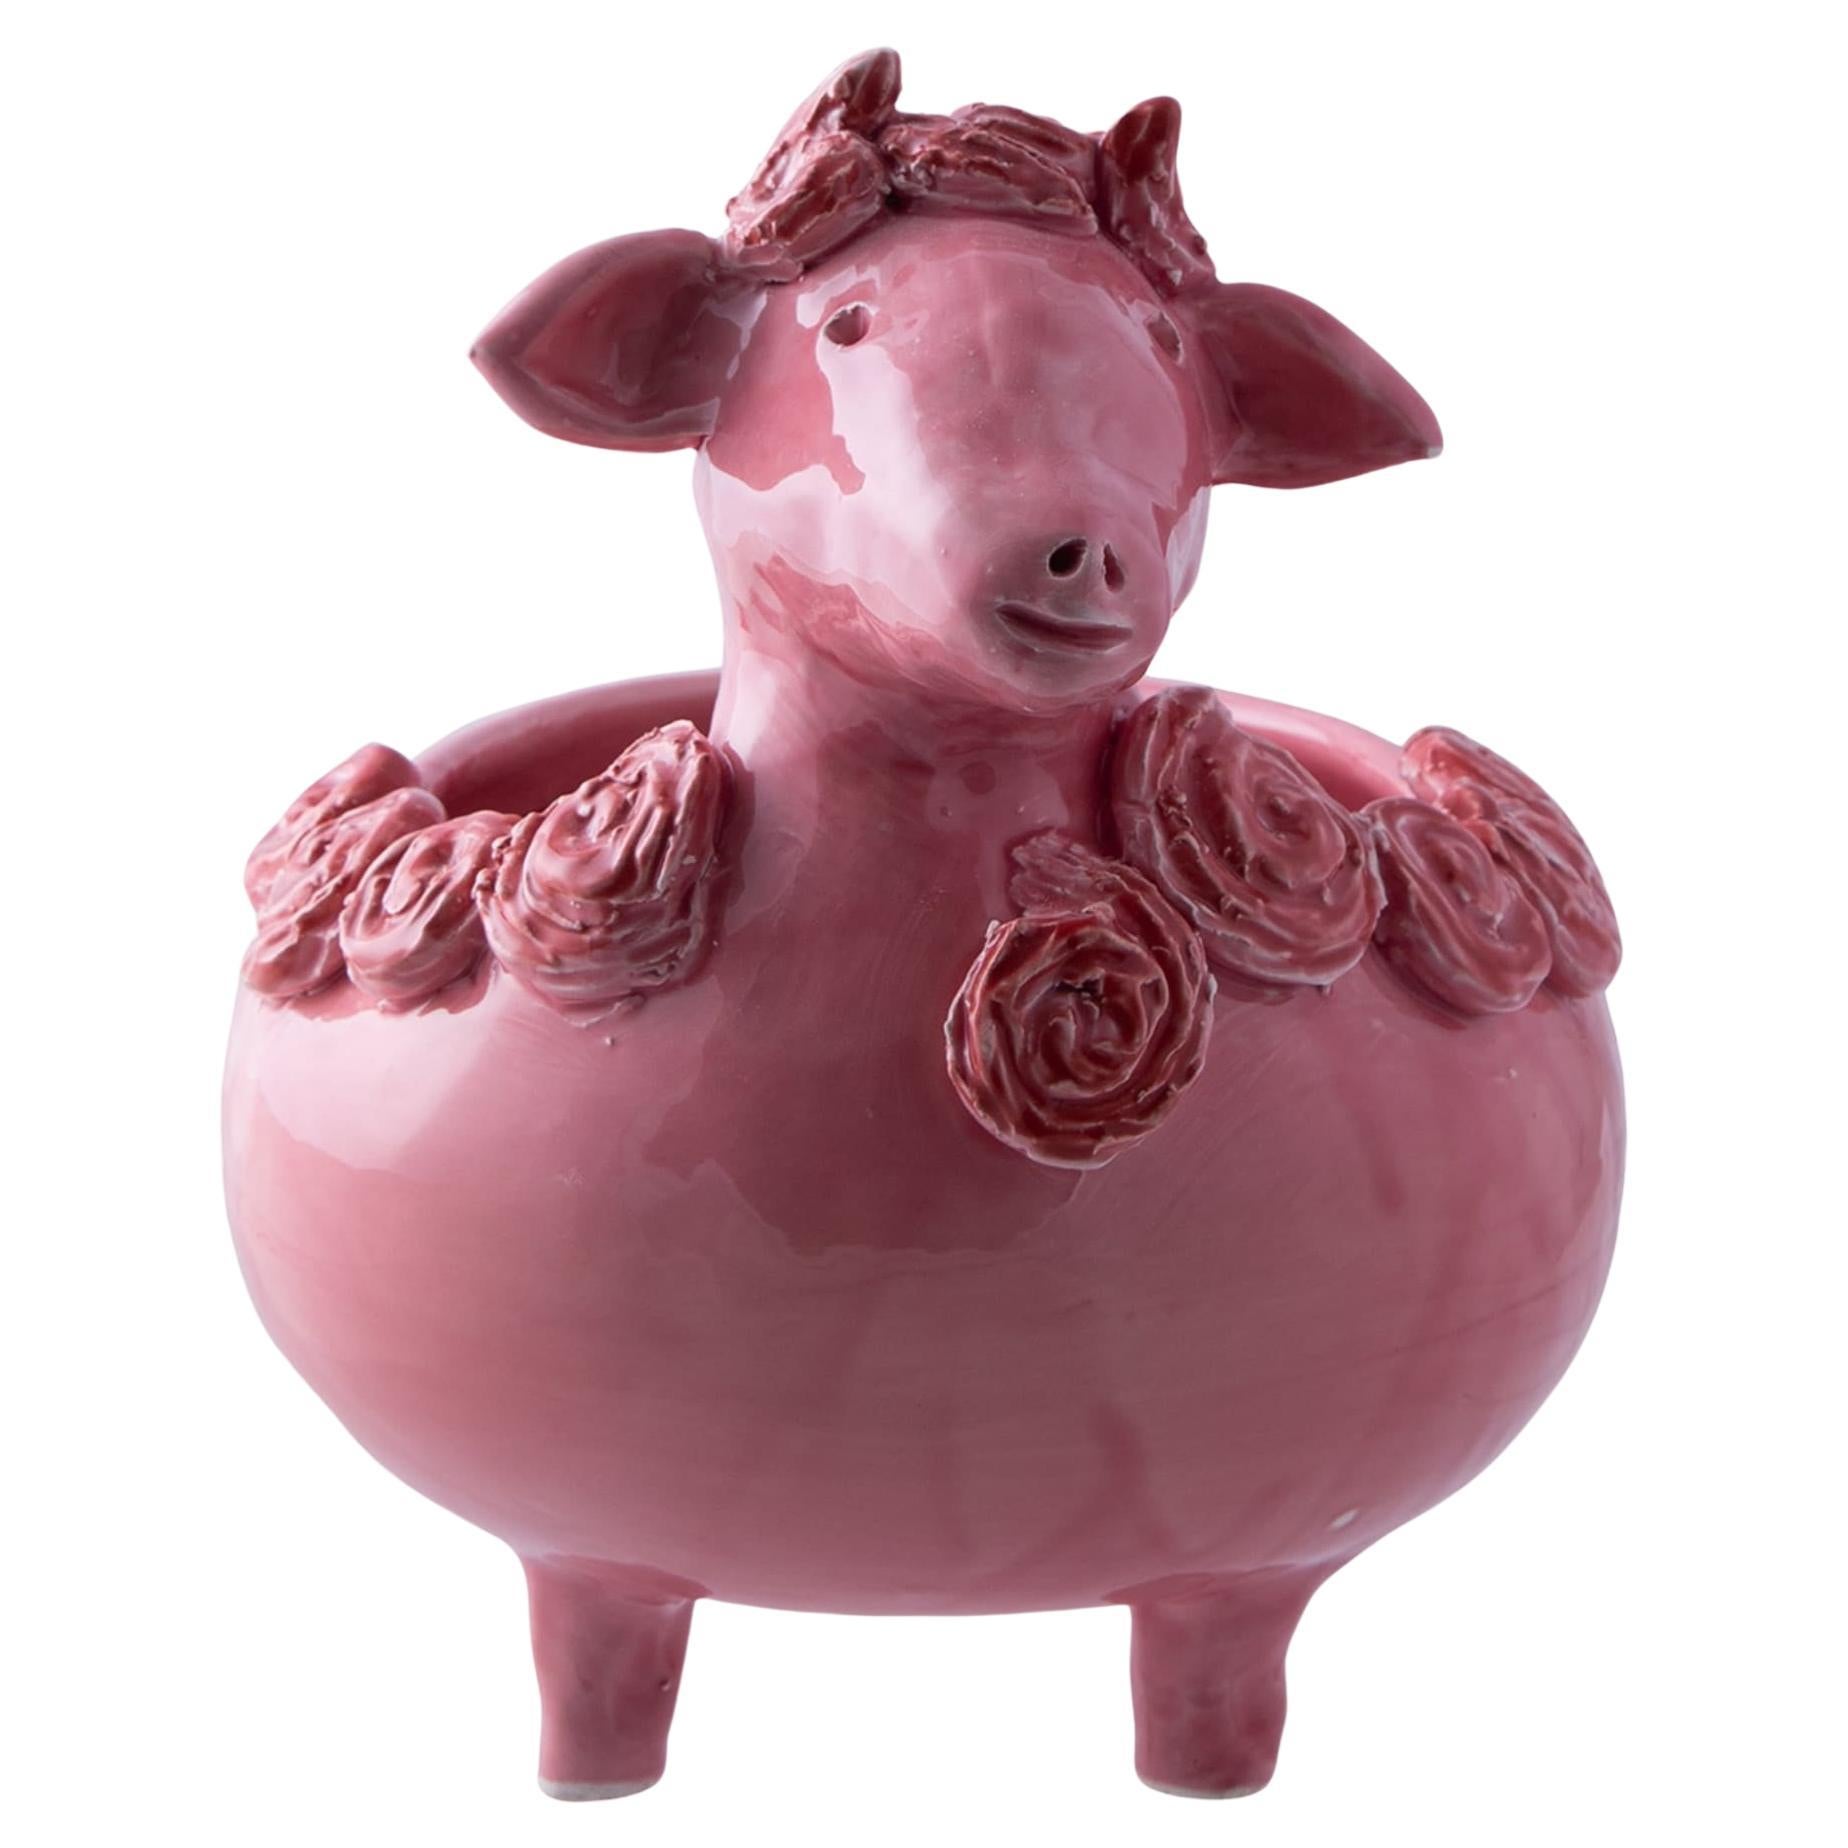 The Pink Sheep Vase Holder For Sale